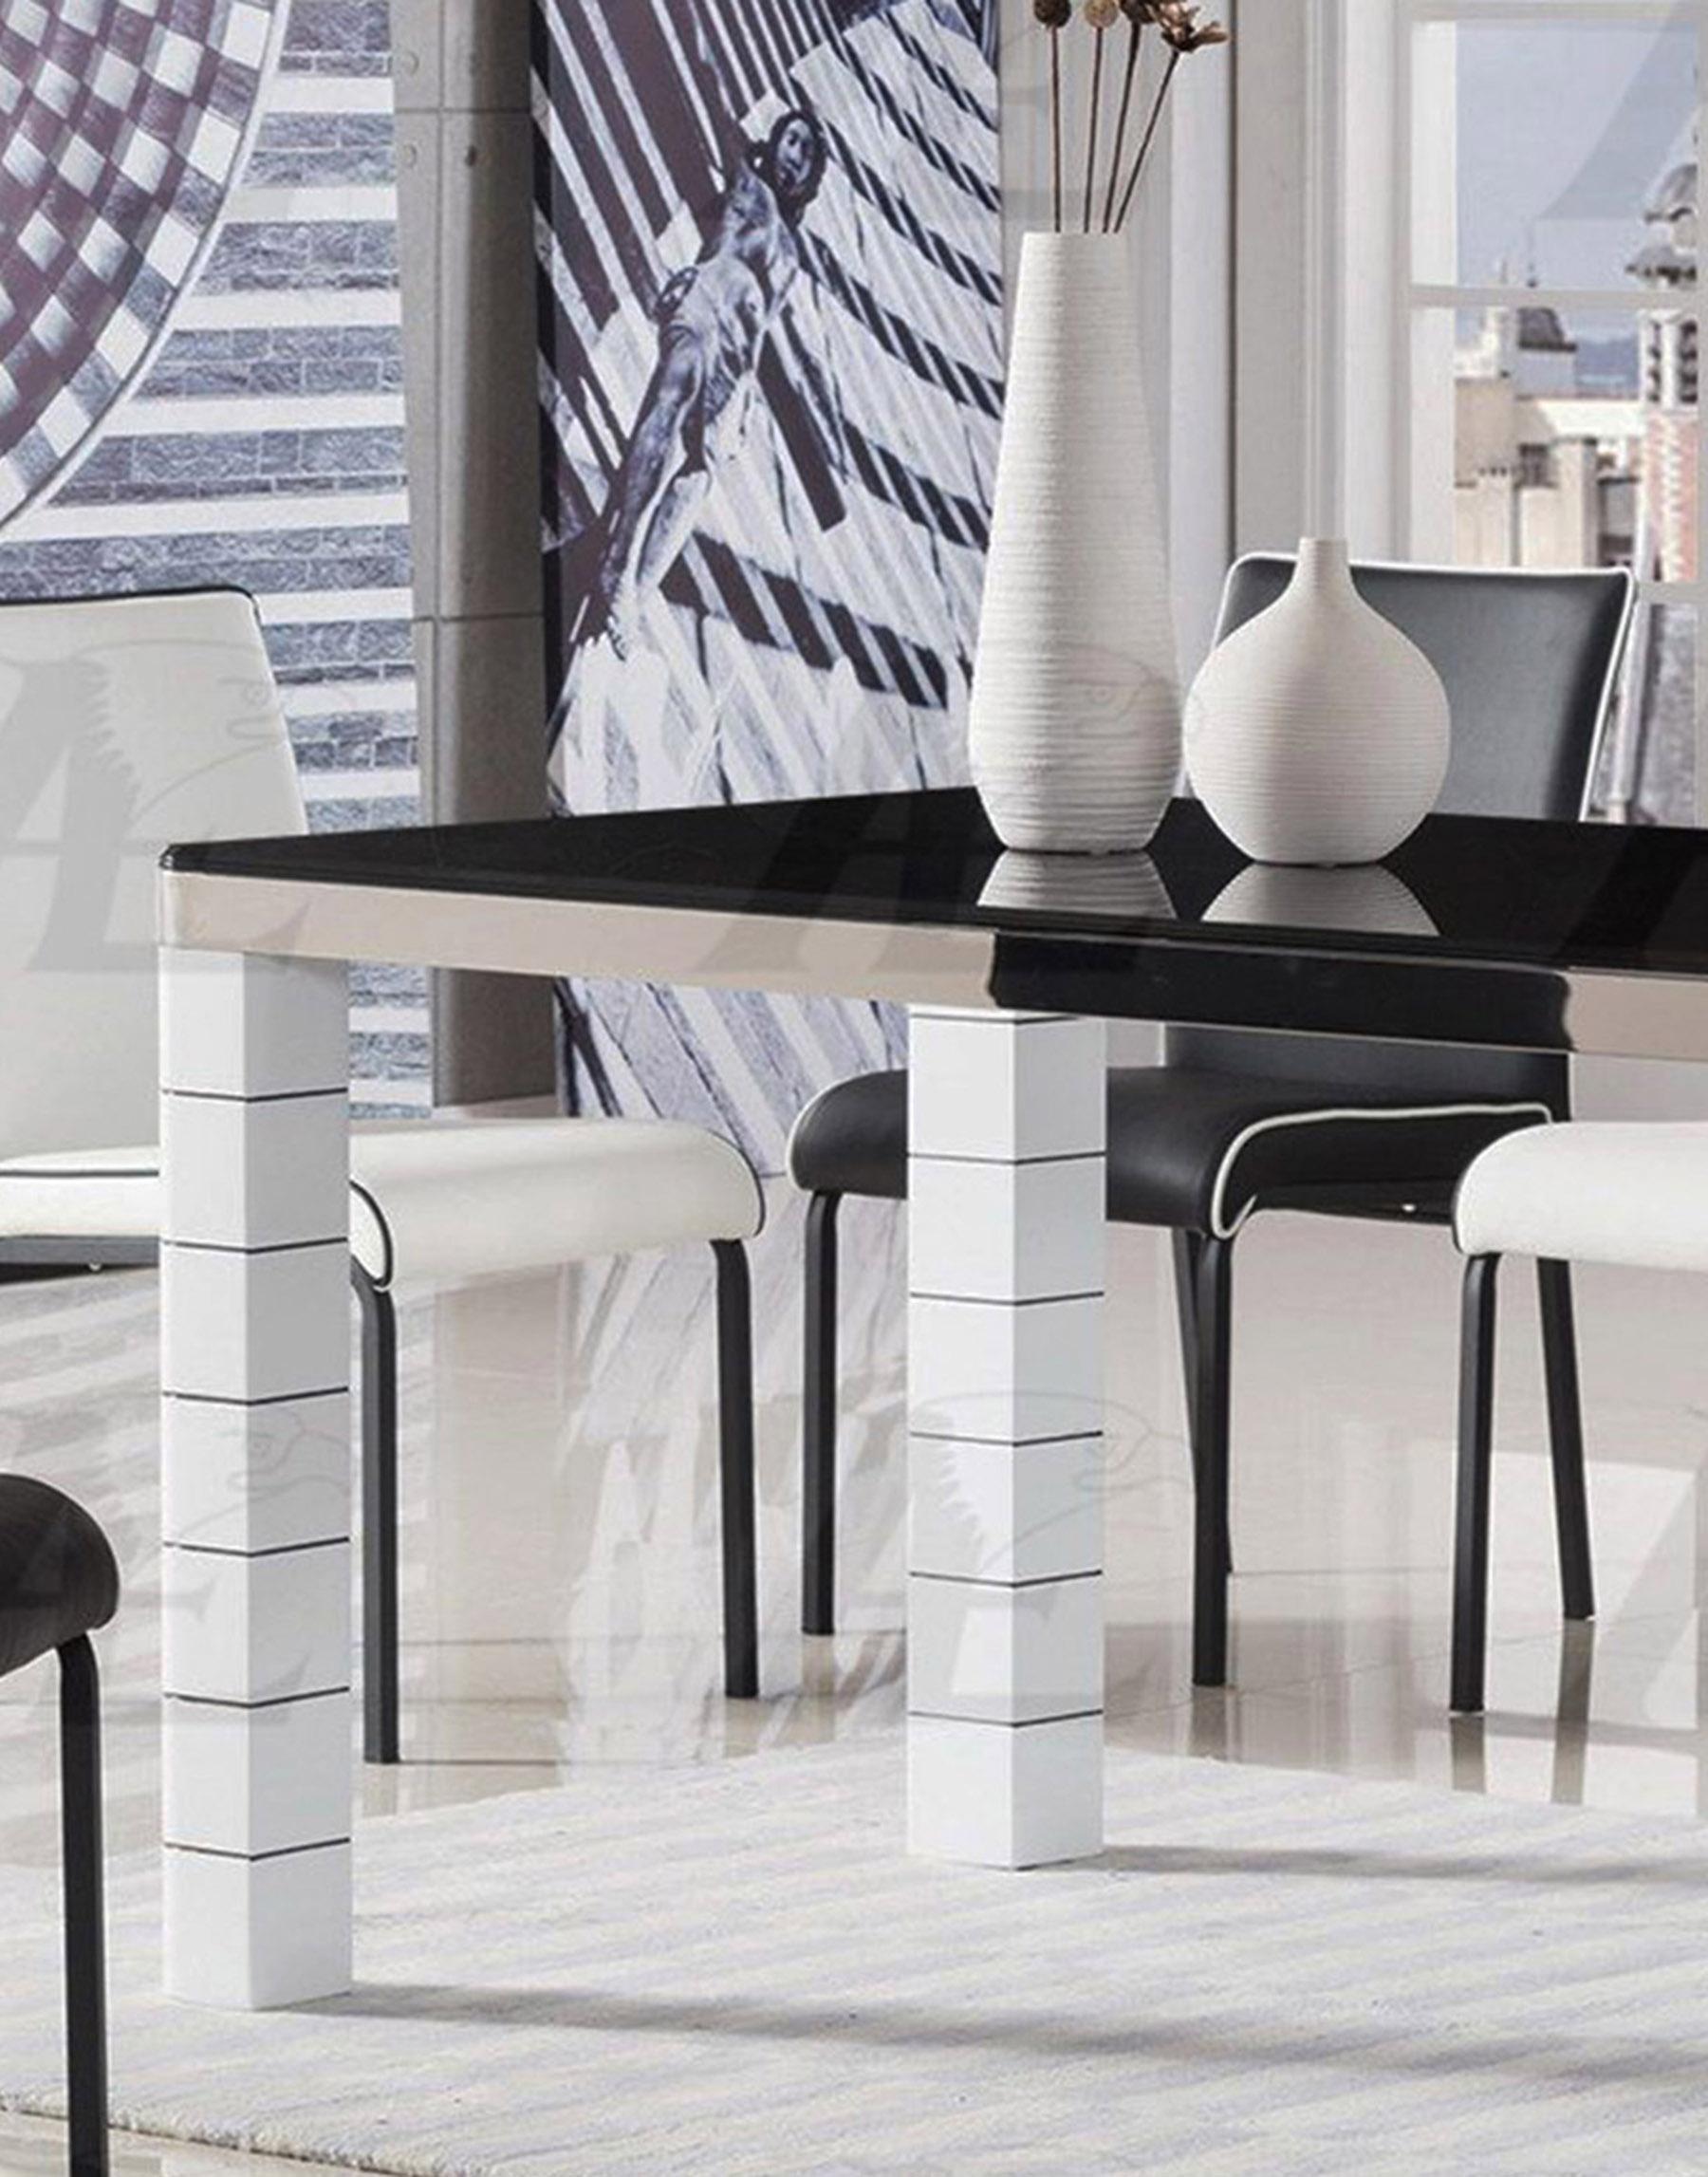 

    
American Eagle Furniture DT-D318 Dining Table Black/Ivory DT-D318
